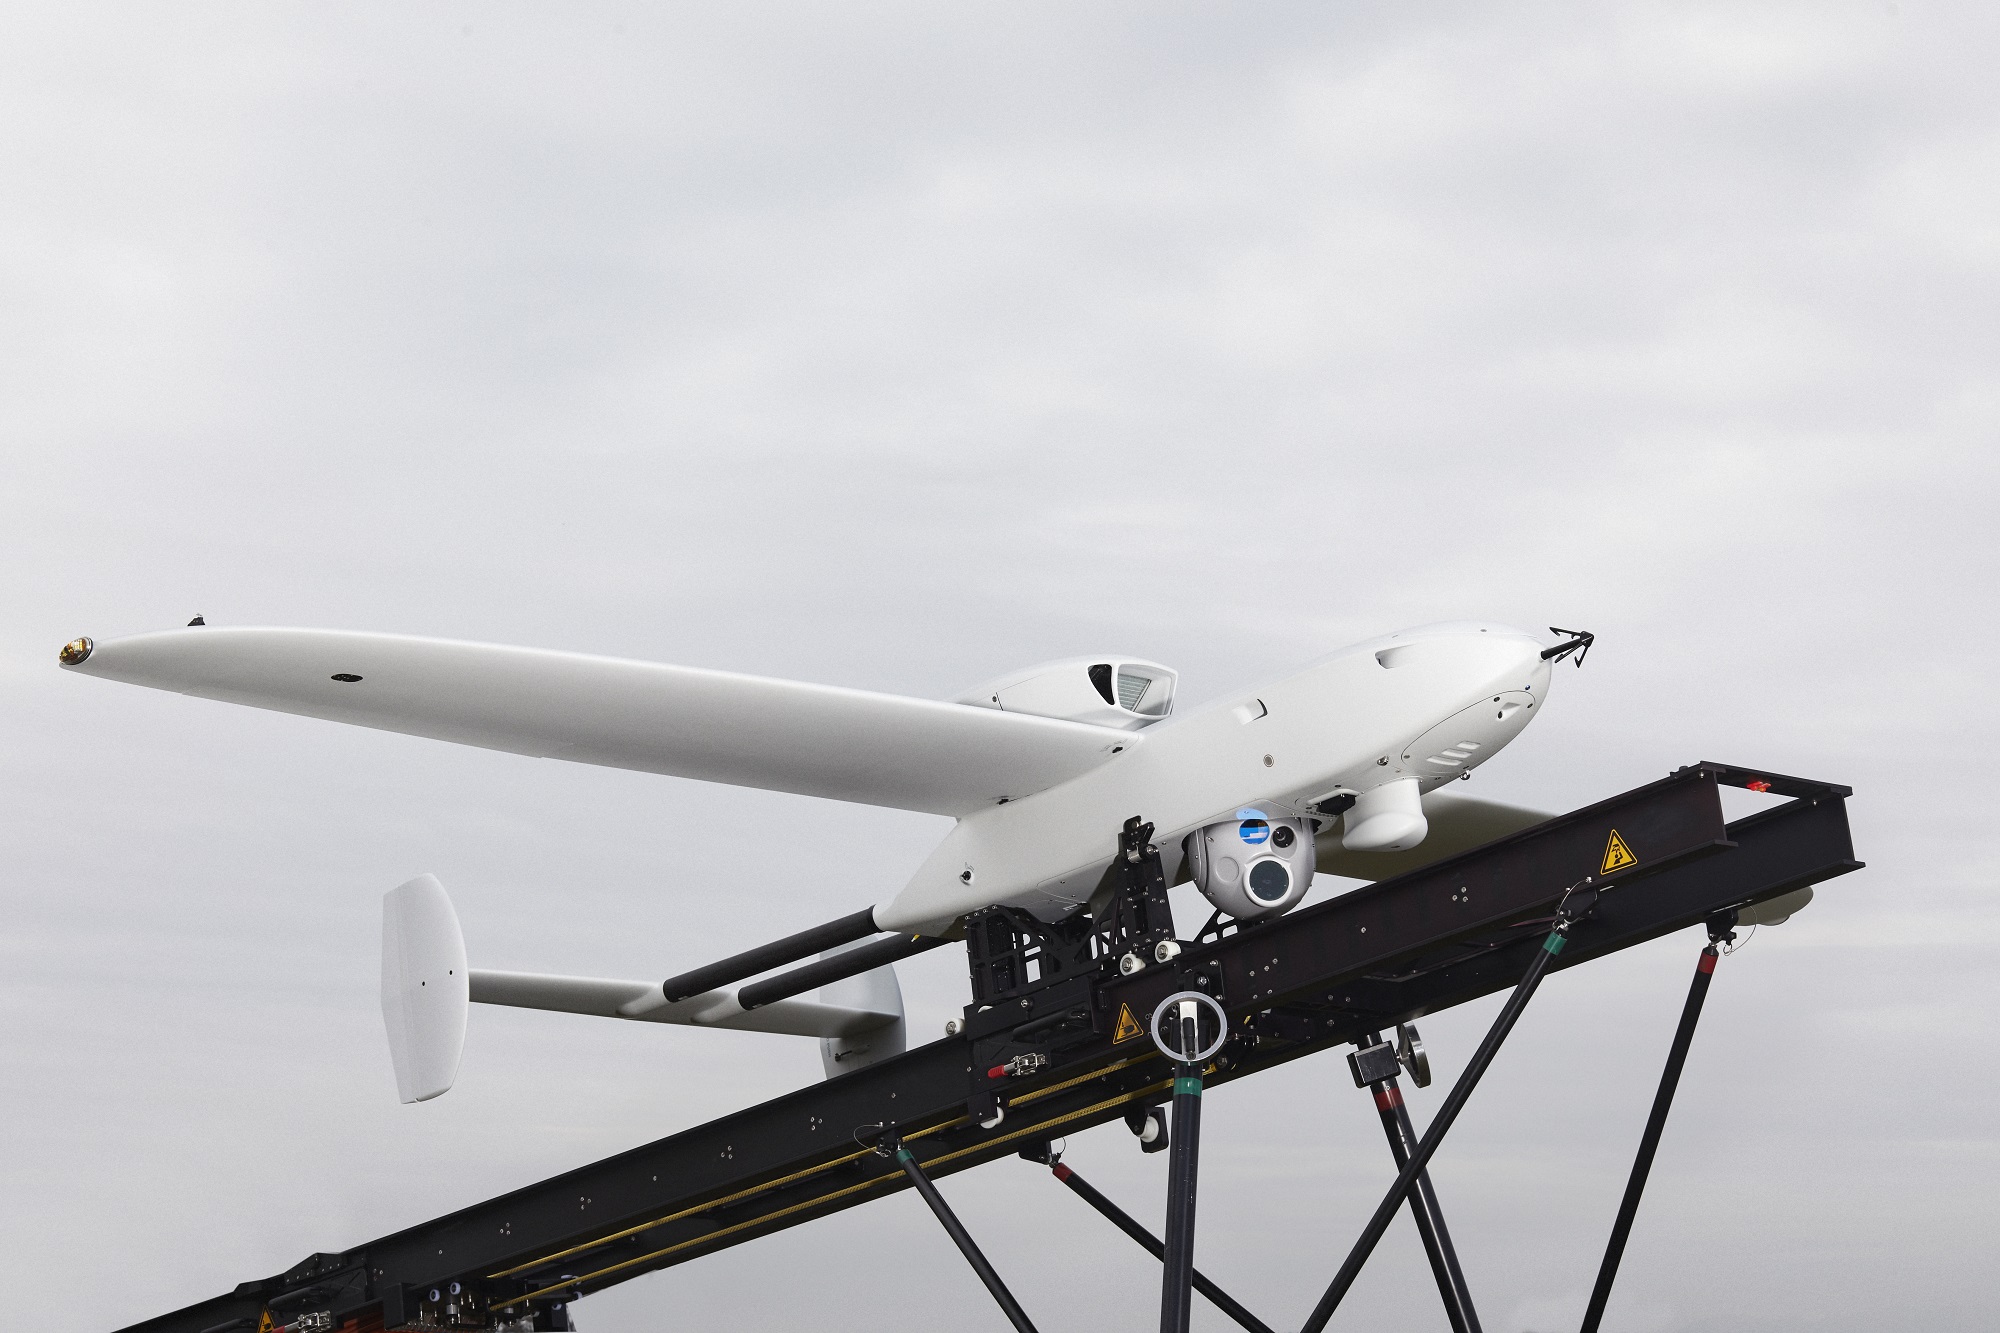 L'Allemagne a acheté à Rheinmetall pour l'Ukraine des drones de reconnaissance modernes Luna NG, qui peuvent rester en l'air pendant plus de 12 heures et transmettre des informations à une distance de plus de 100 kilomètres.